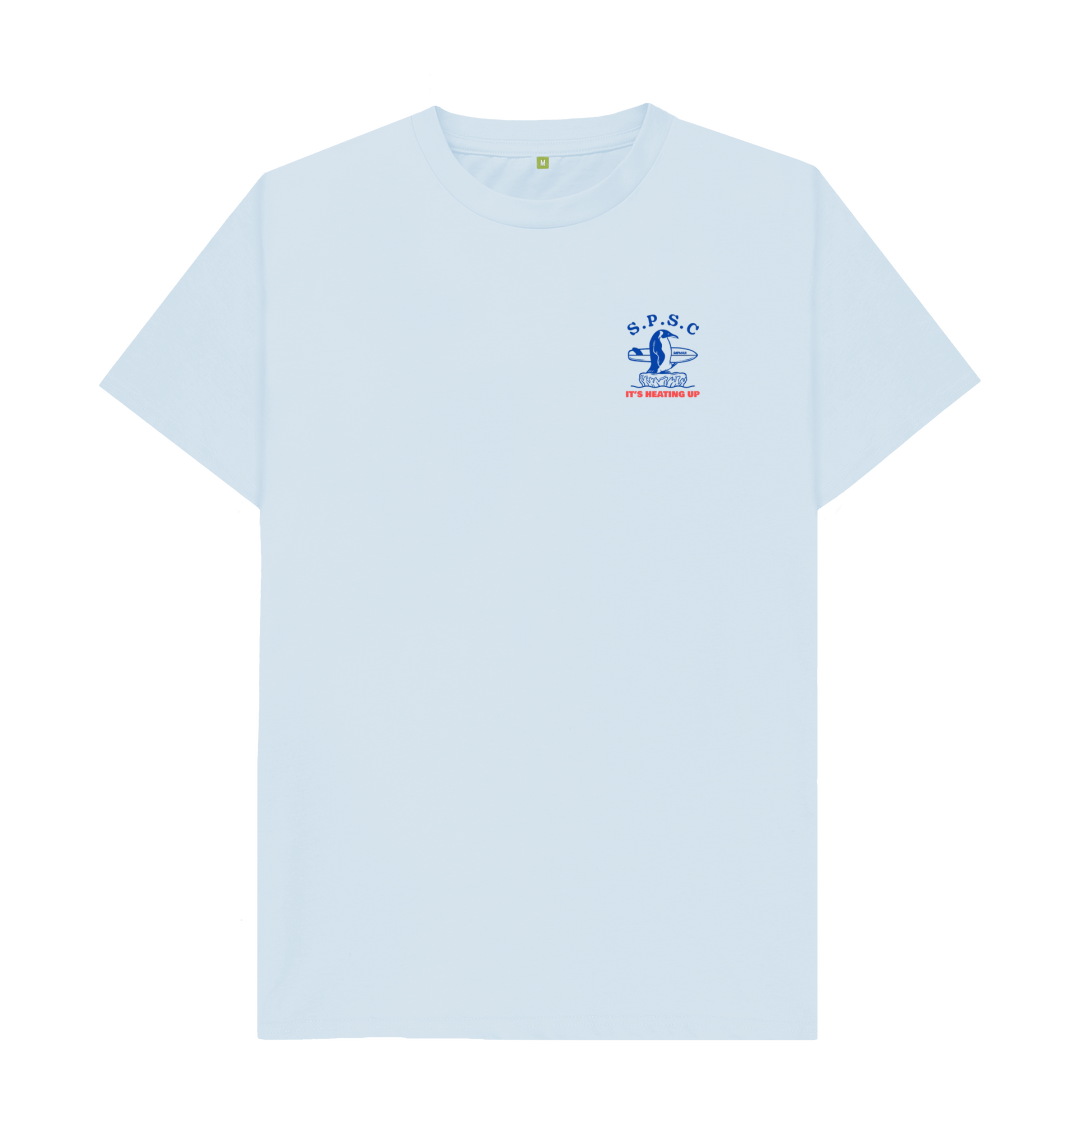 South Pole Surf Club T-Shirt | Rapanui clothing